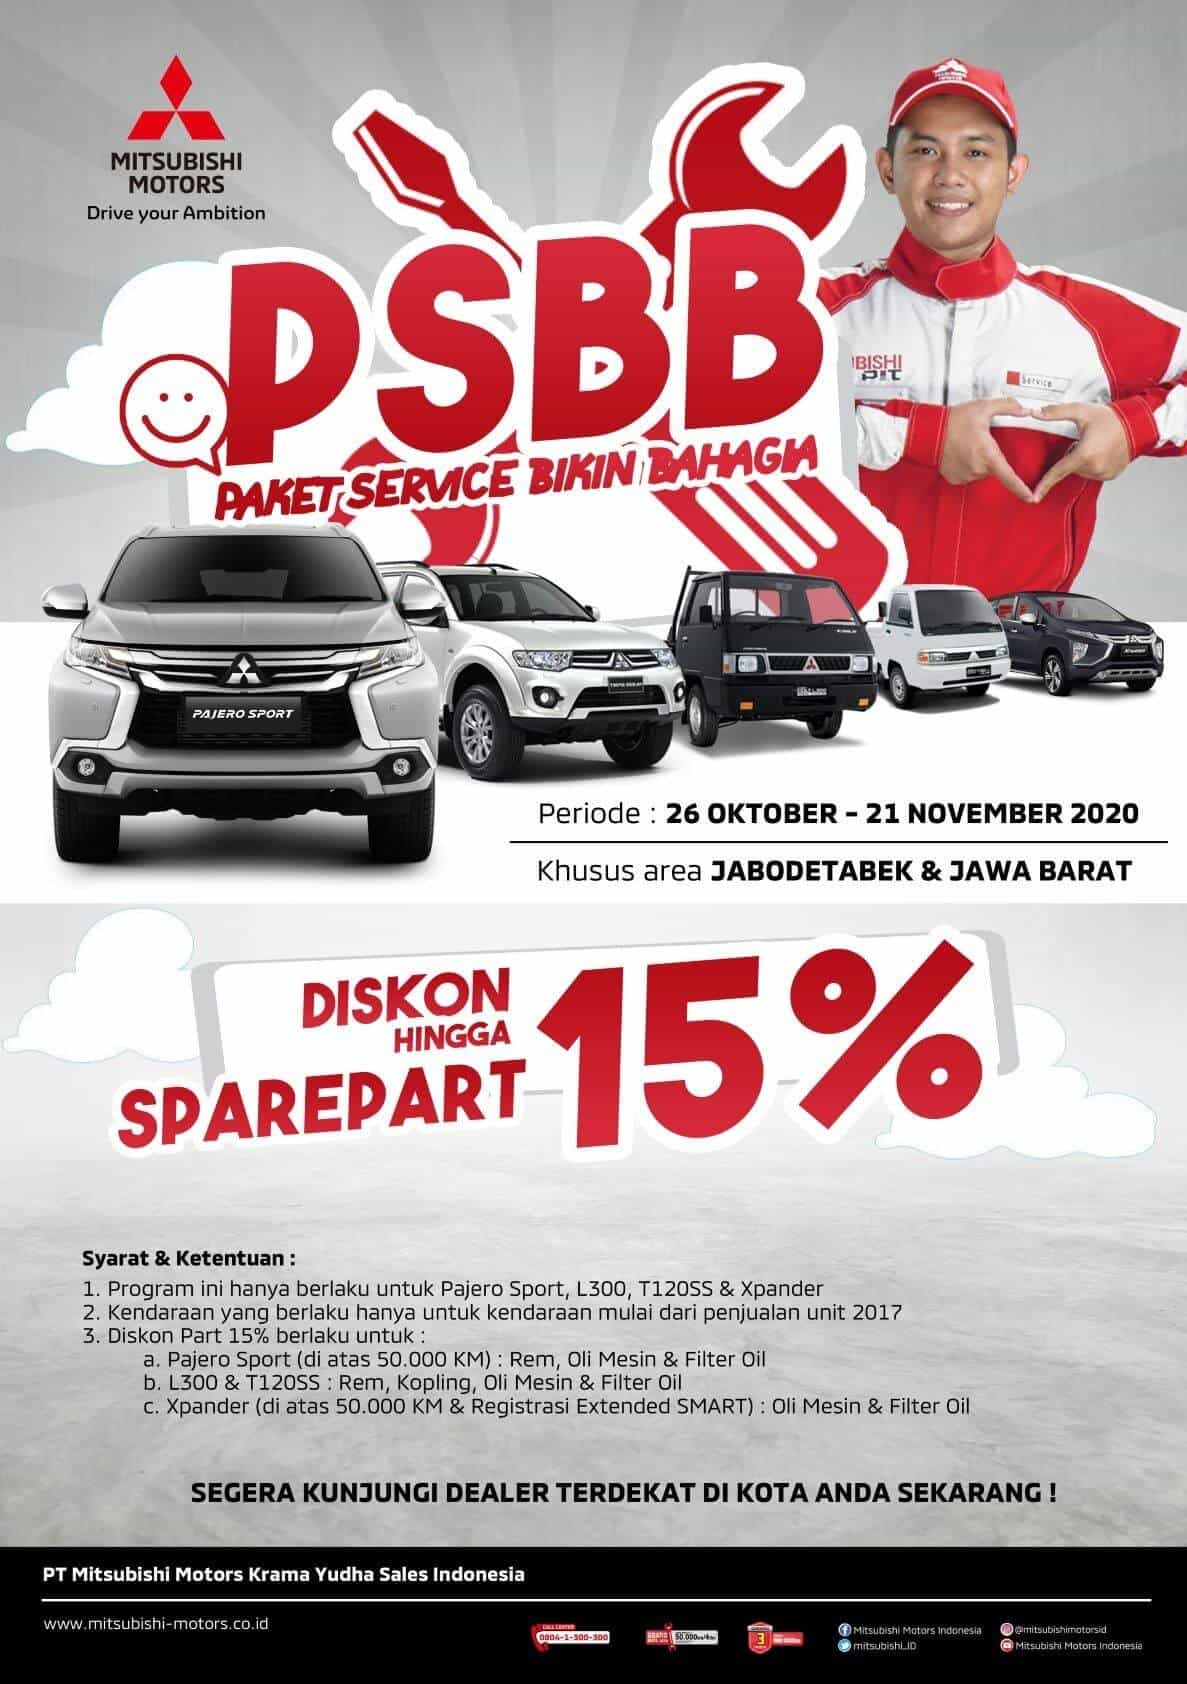 MMKSI Hadirkan “Regional Campaign”, Program Spesial Bagi Konsumen Mitsubishi di Indonesia